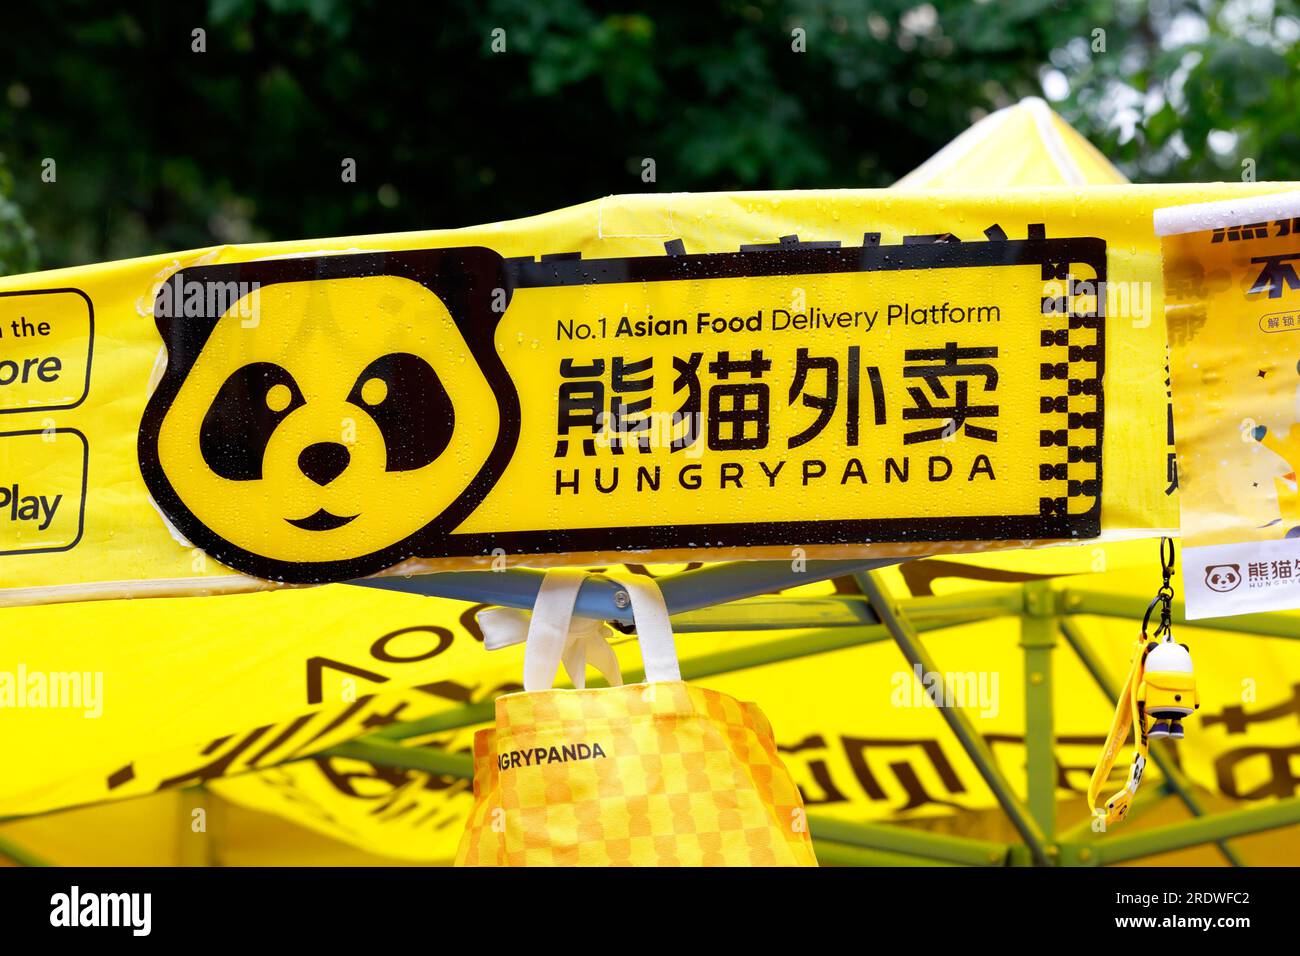 Signalisation pour Hungry Panda 熊貓外賣 plate-forme de livraison de nourriture asiatique Banque D'Images